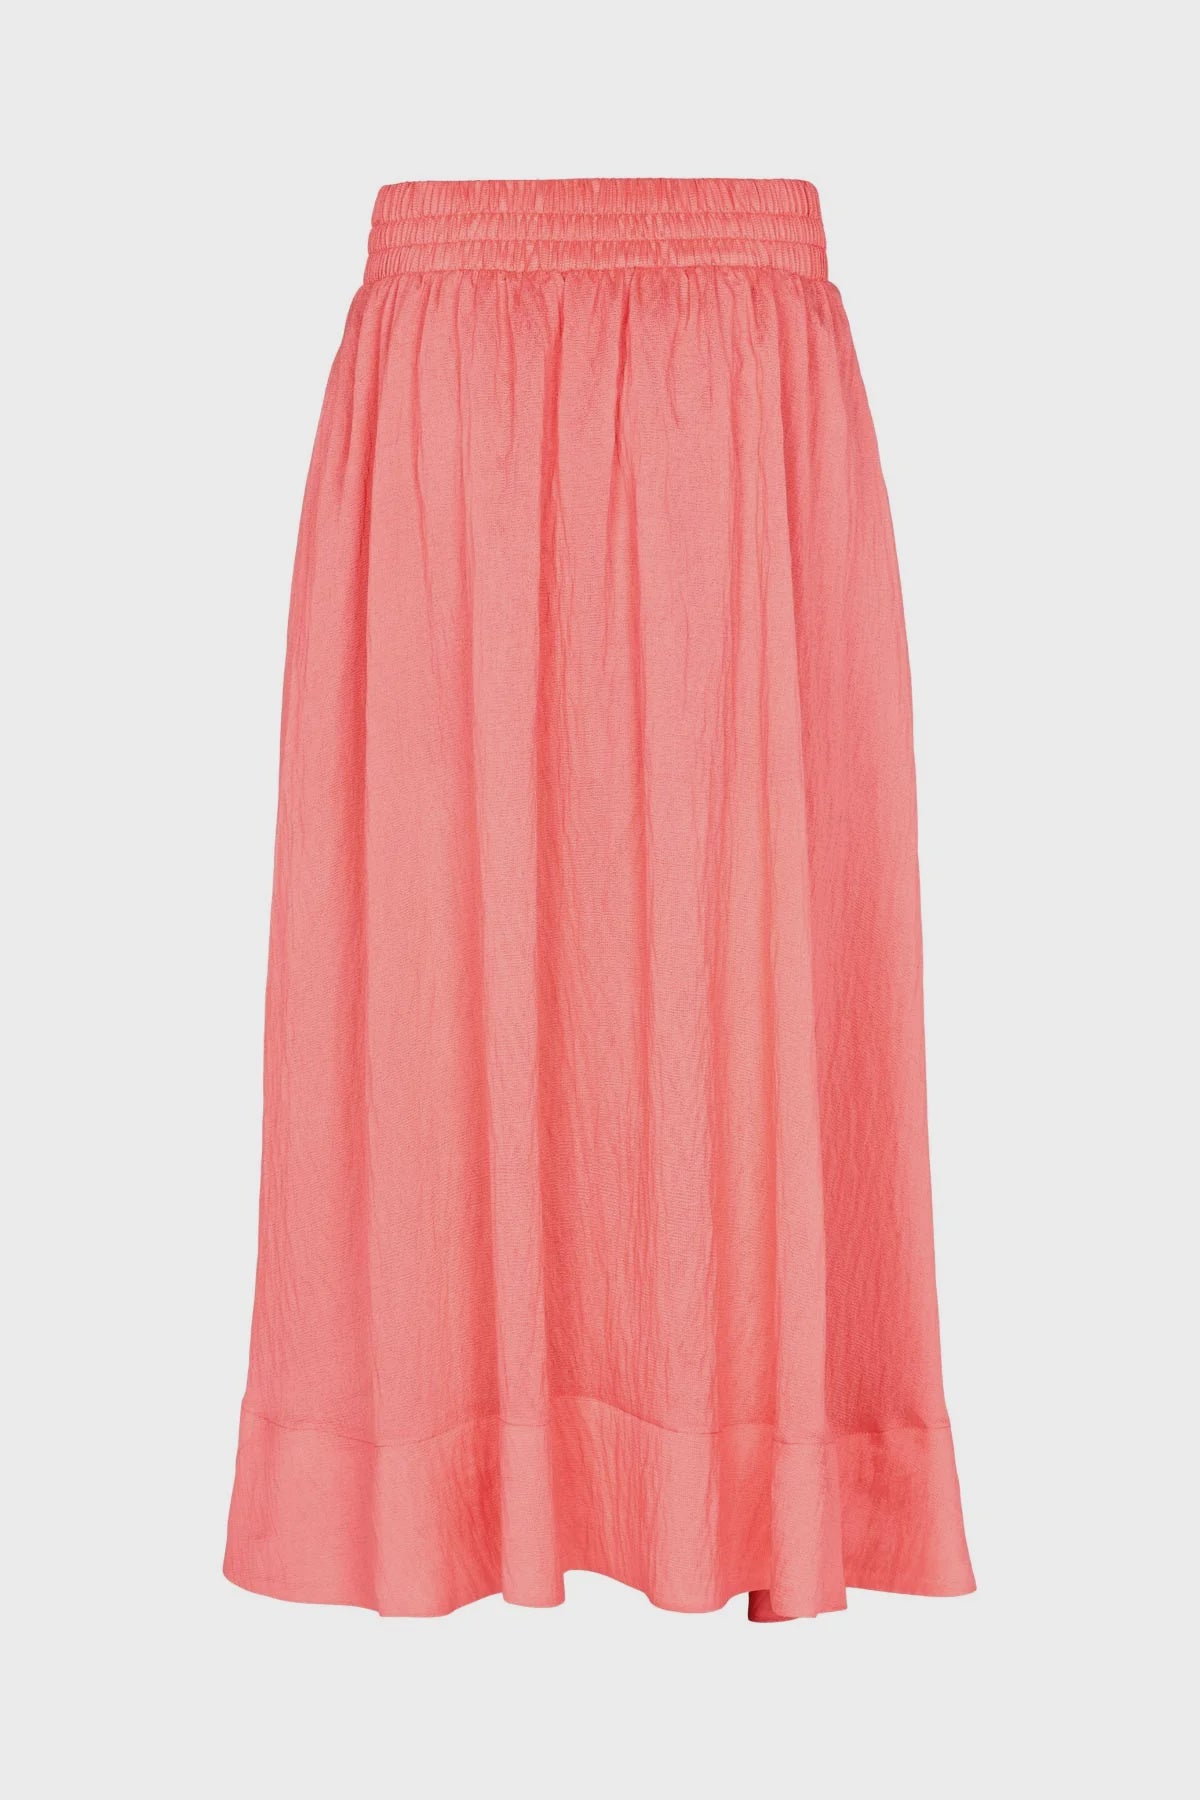 Ottaiva Skirt- Lotus Pink